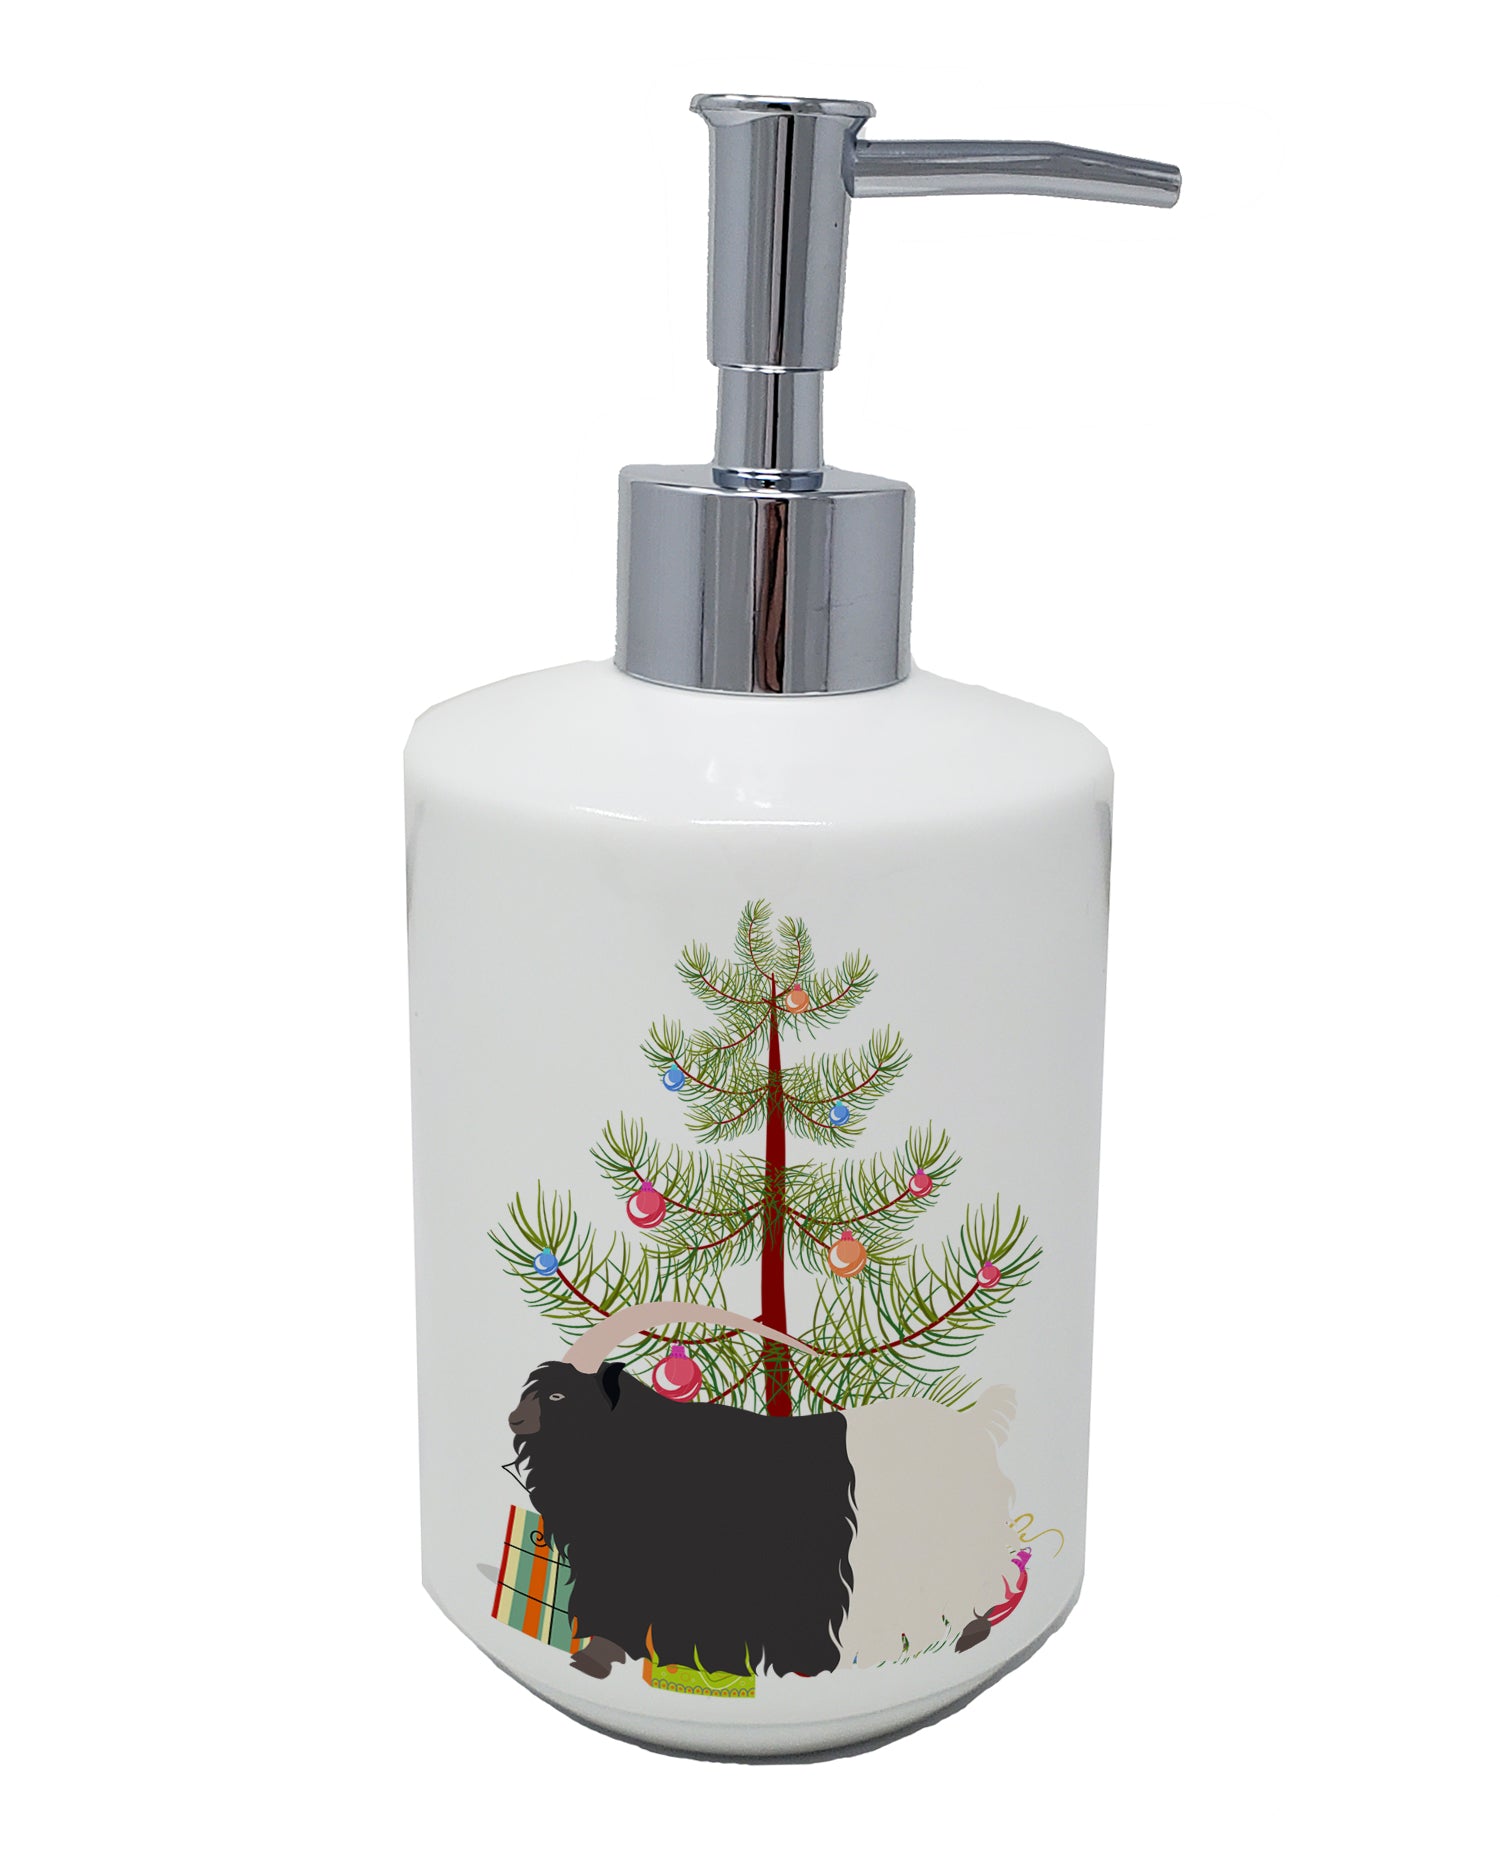 Buy this Welsh Black-Necked Goat Christmas Ceramic Soap Dispenser